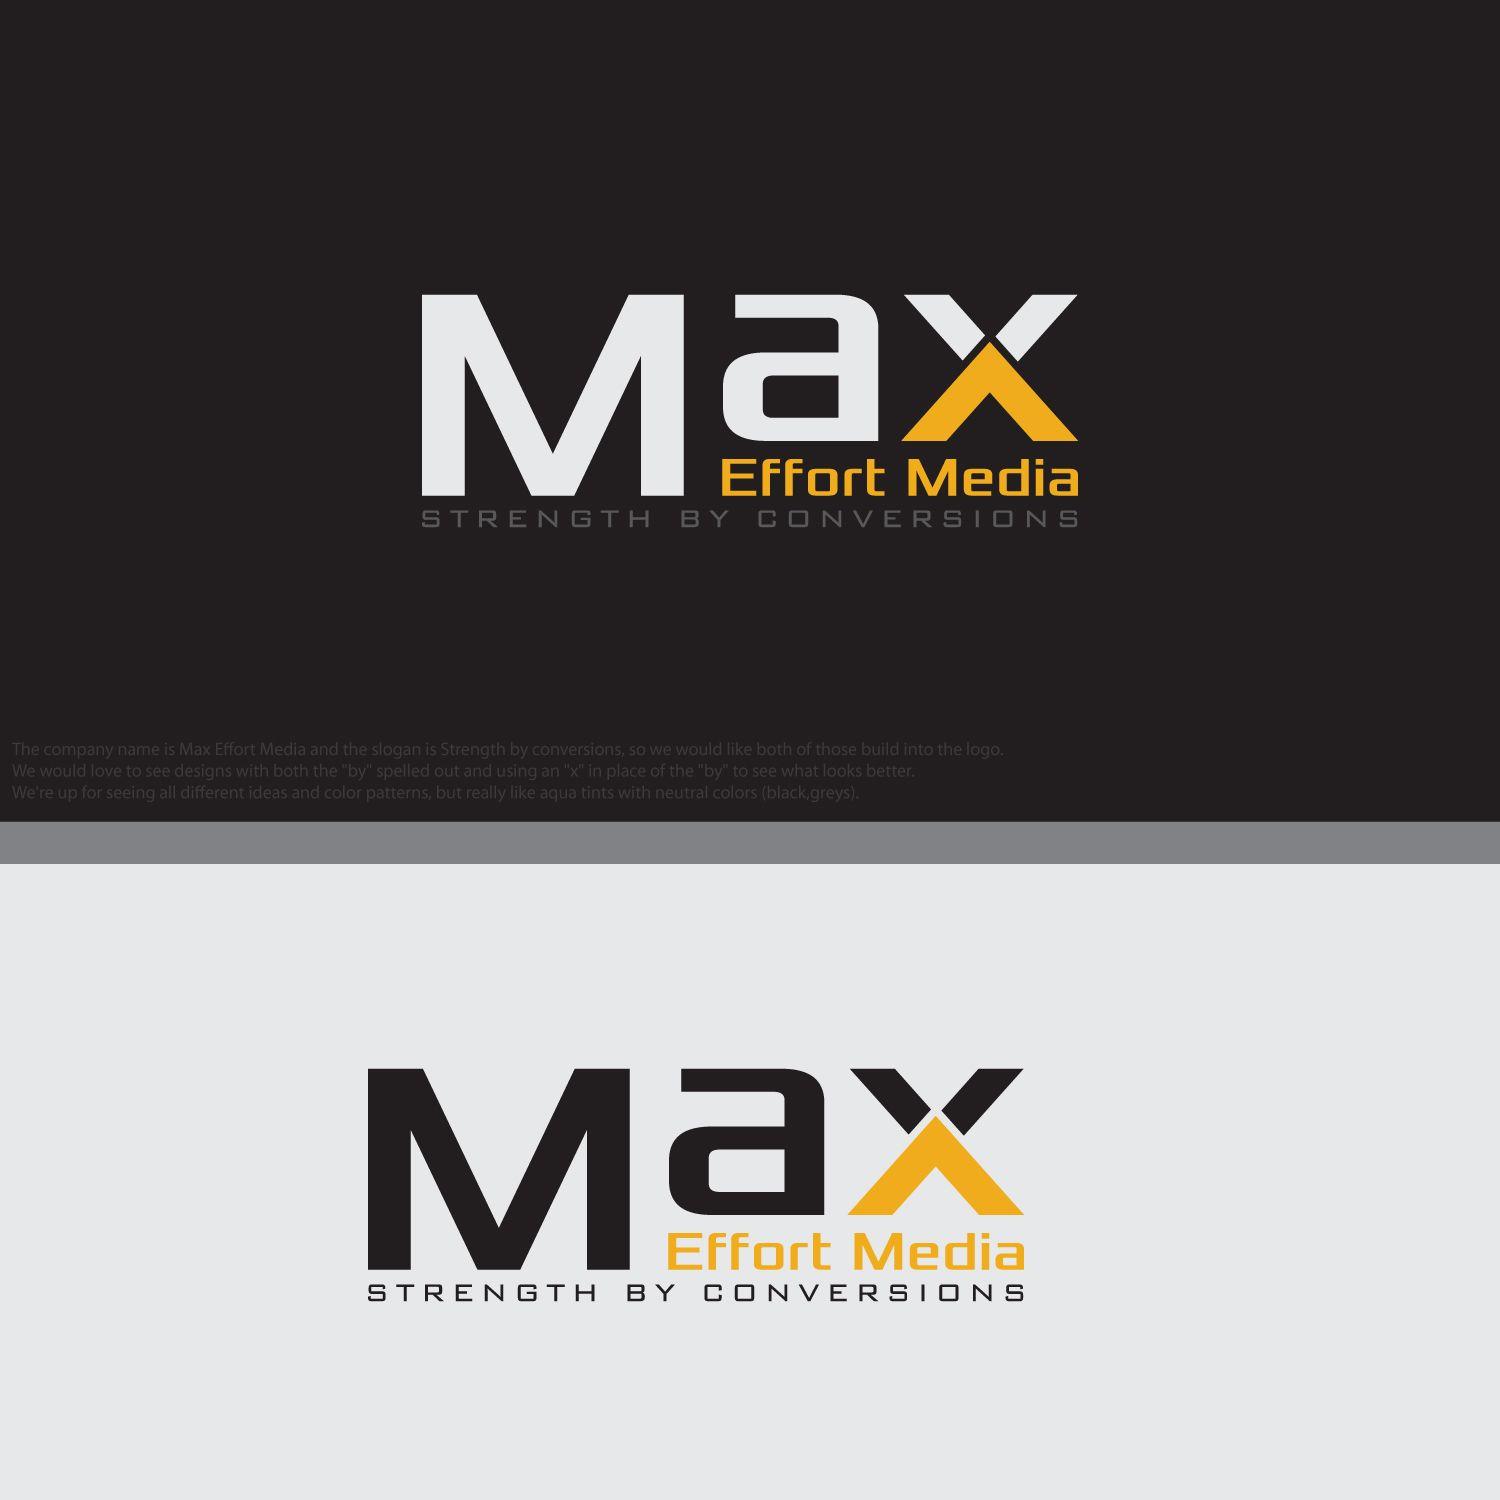 Effort Logo - Playful, Modern, Digital Logo Design For Max Effort Media Strength